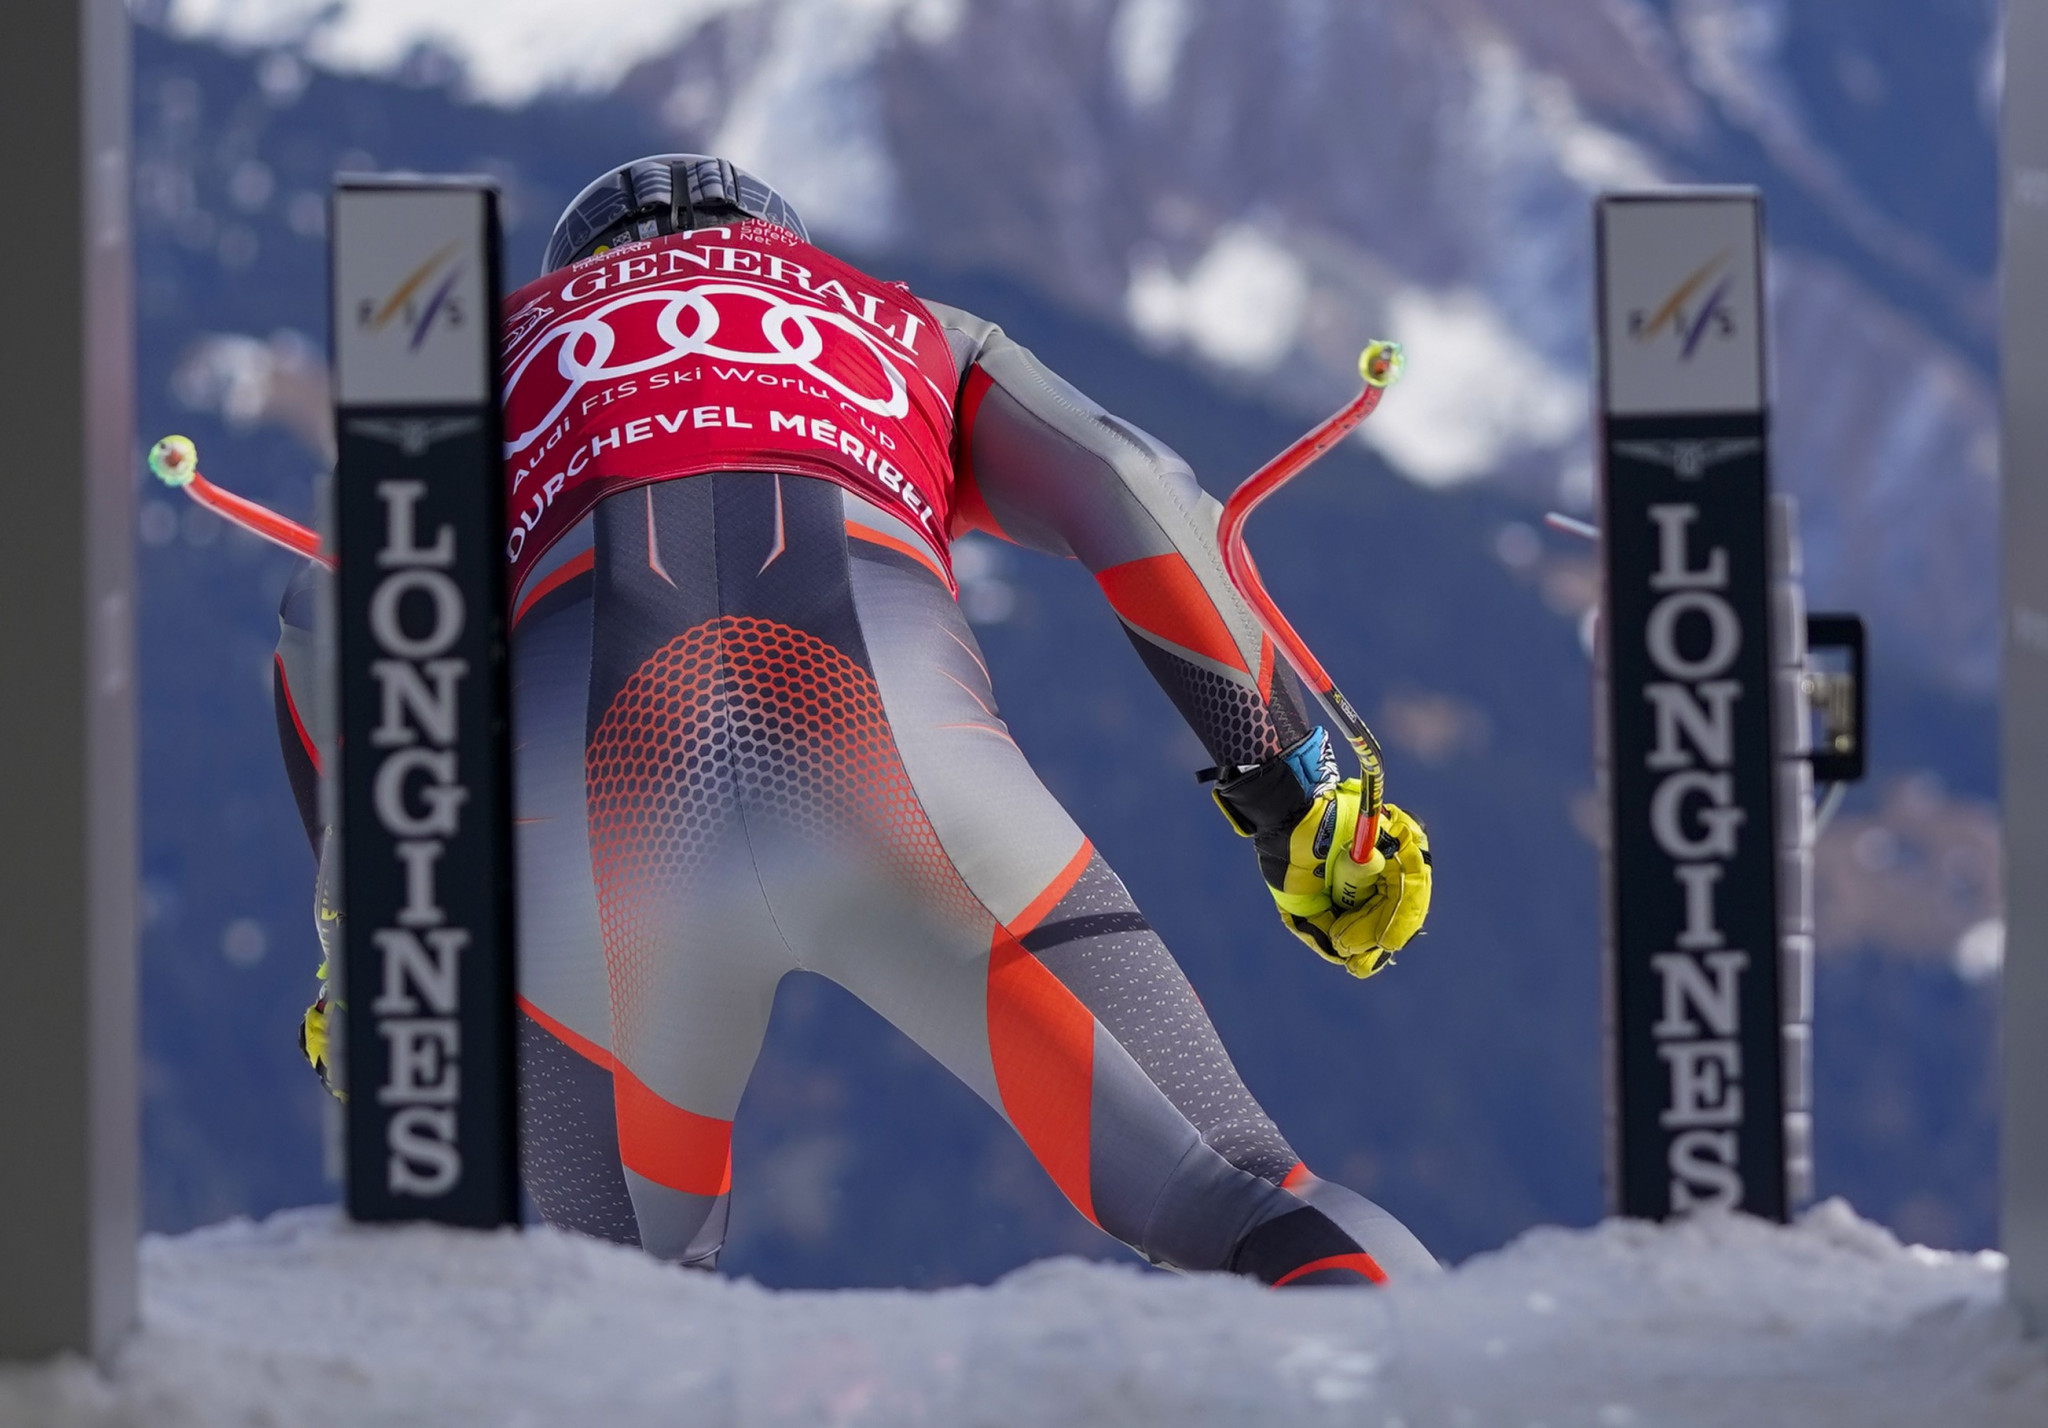 Ryste tenure as head of Norway's Alpine ski team extended until 2027